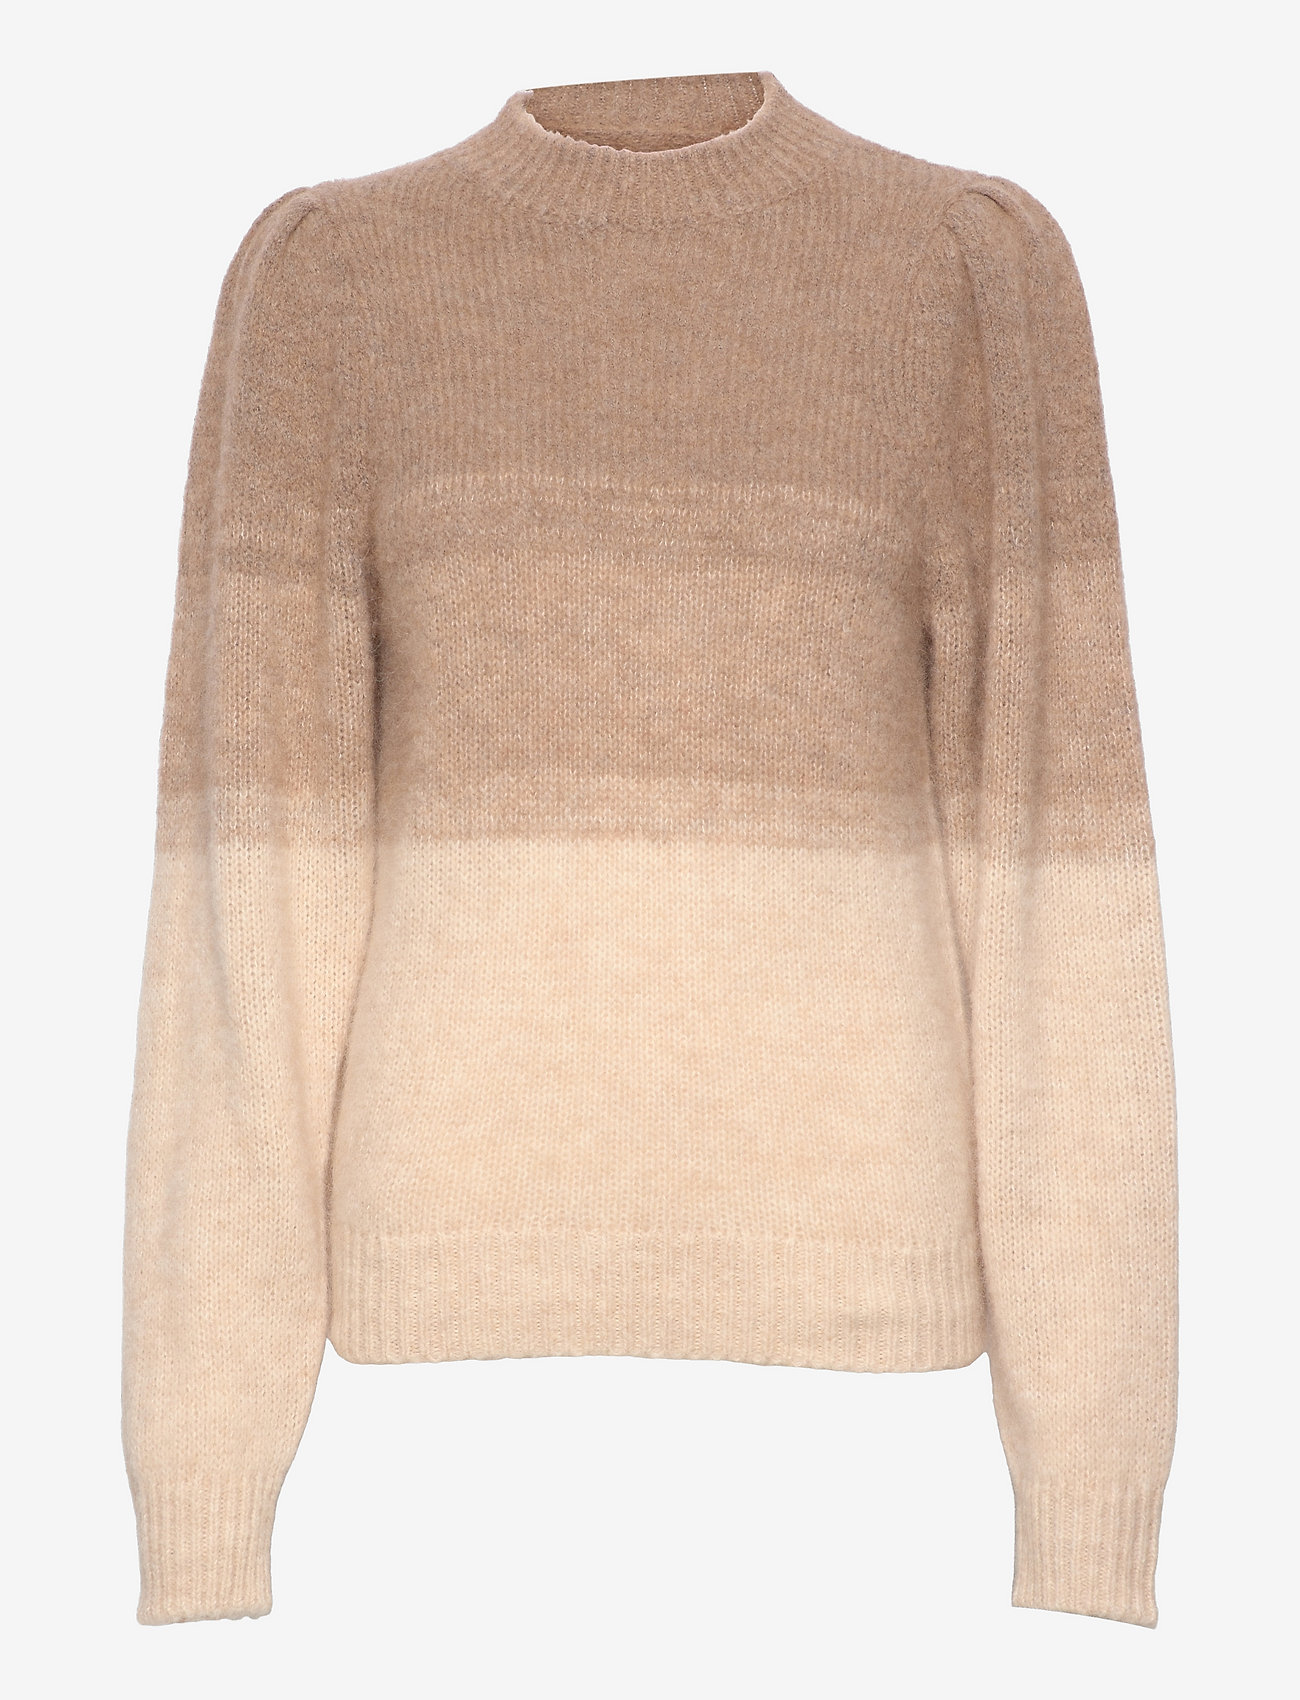 NORR - Natalia knit top - strikkegensere - light brown - 0